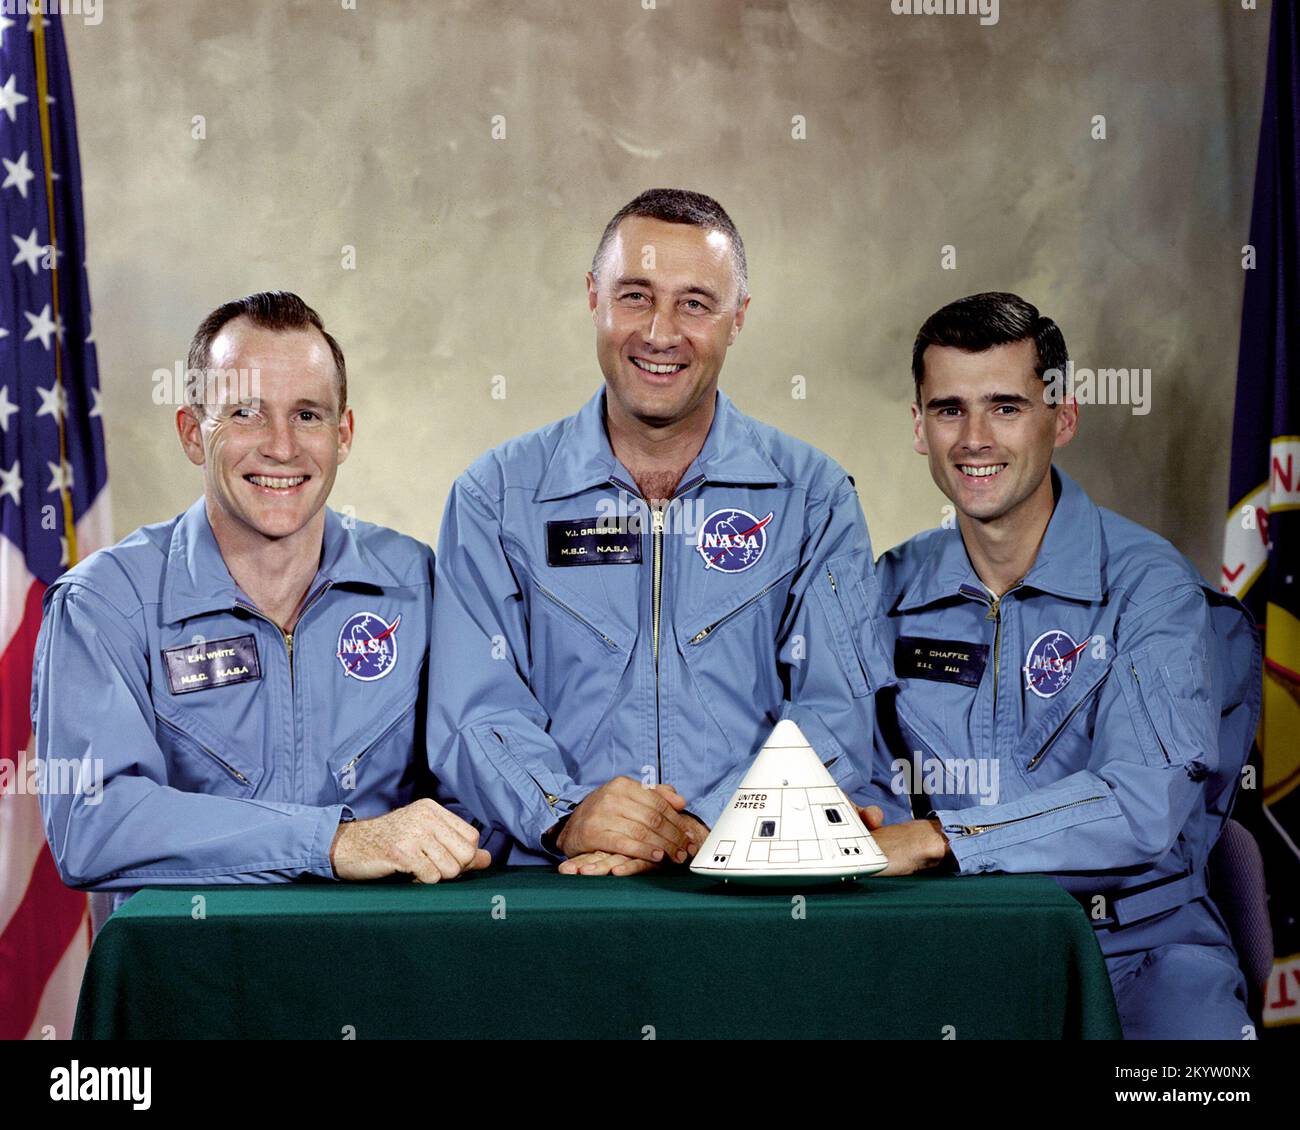 Ritratto dell'Apollo 1 il primo equipaggio per primo manned Apollo volo spaziale. Da sinistra a destra sono: Edward H. White II, Virgilio I. "Gus' Grissom e Roger B. Chaffee. Il 27 gennaio 1967 a 5:31 p.m. CST (6:31 ora locale) durante una routine lancio simulato test a bordo della Apollo Saturn V Moon rocket, un corto circuito elettrico all'interno dell'Apollo modulo di comando acceso l'ossigeno puro ambiente e nel giro di pochi secondi tutti e tre Apollo 1 il suo equipaggio perirono. Foto Stock